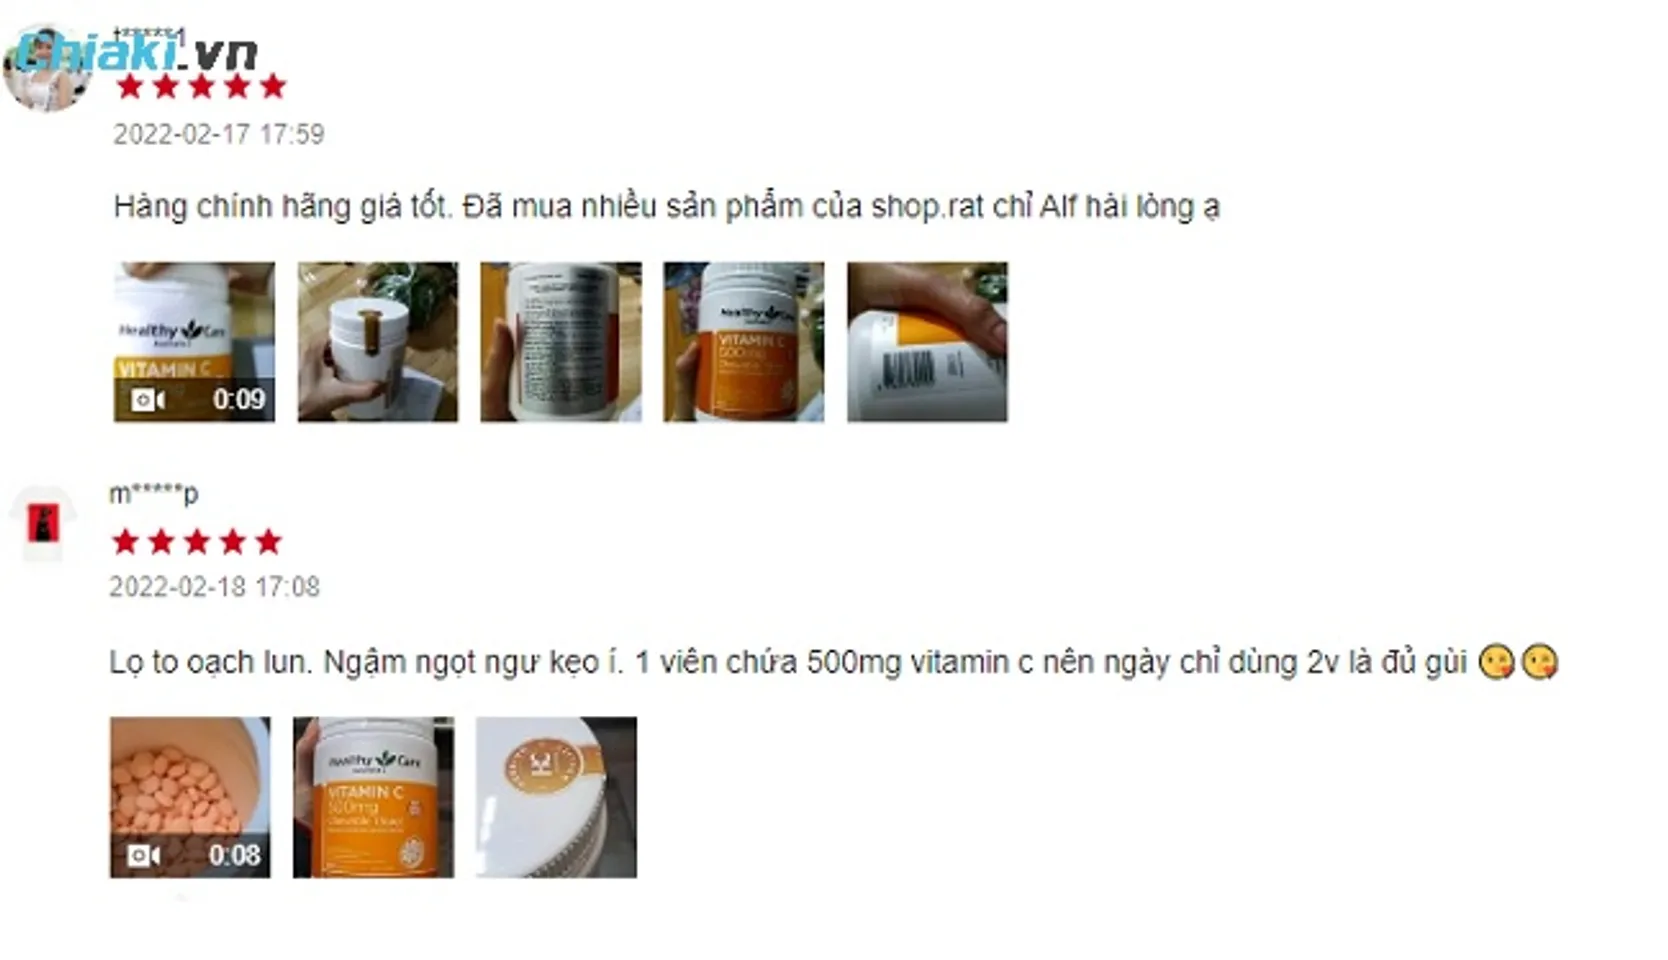 Review vitamin C Healthy Care từ người mua hàng